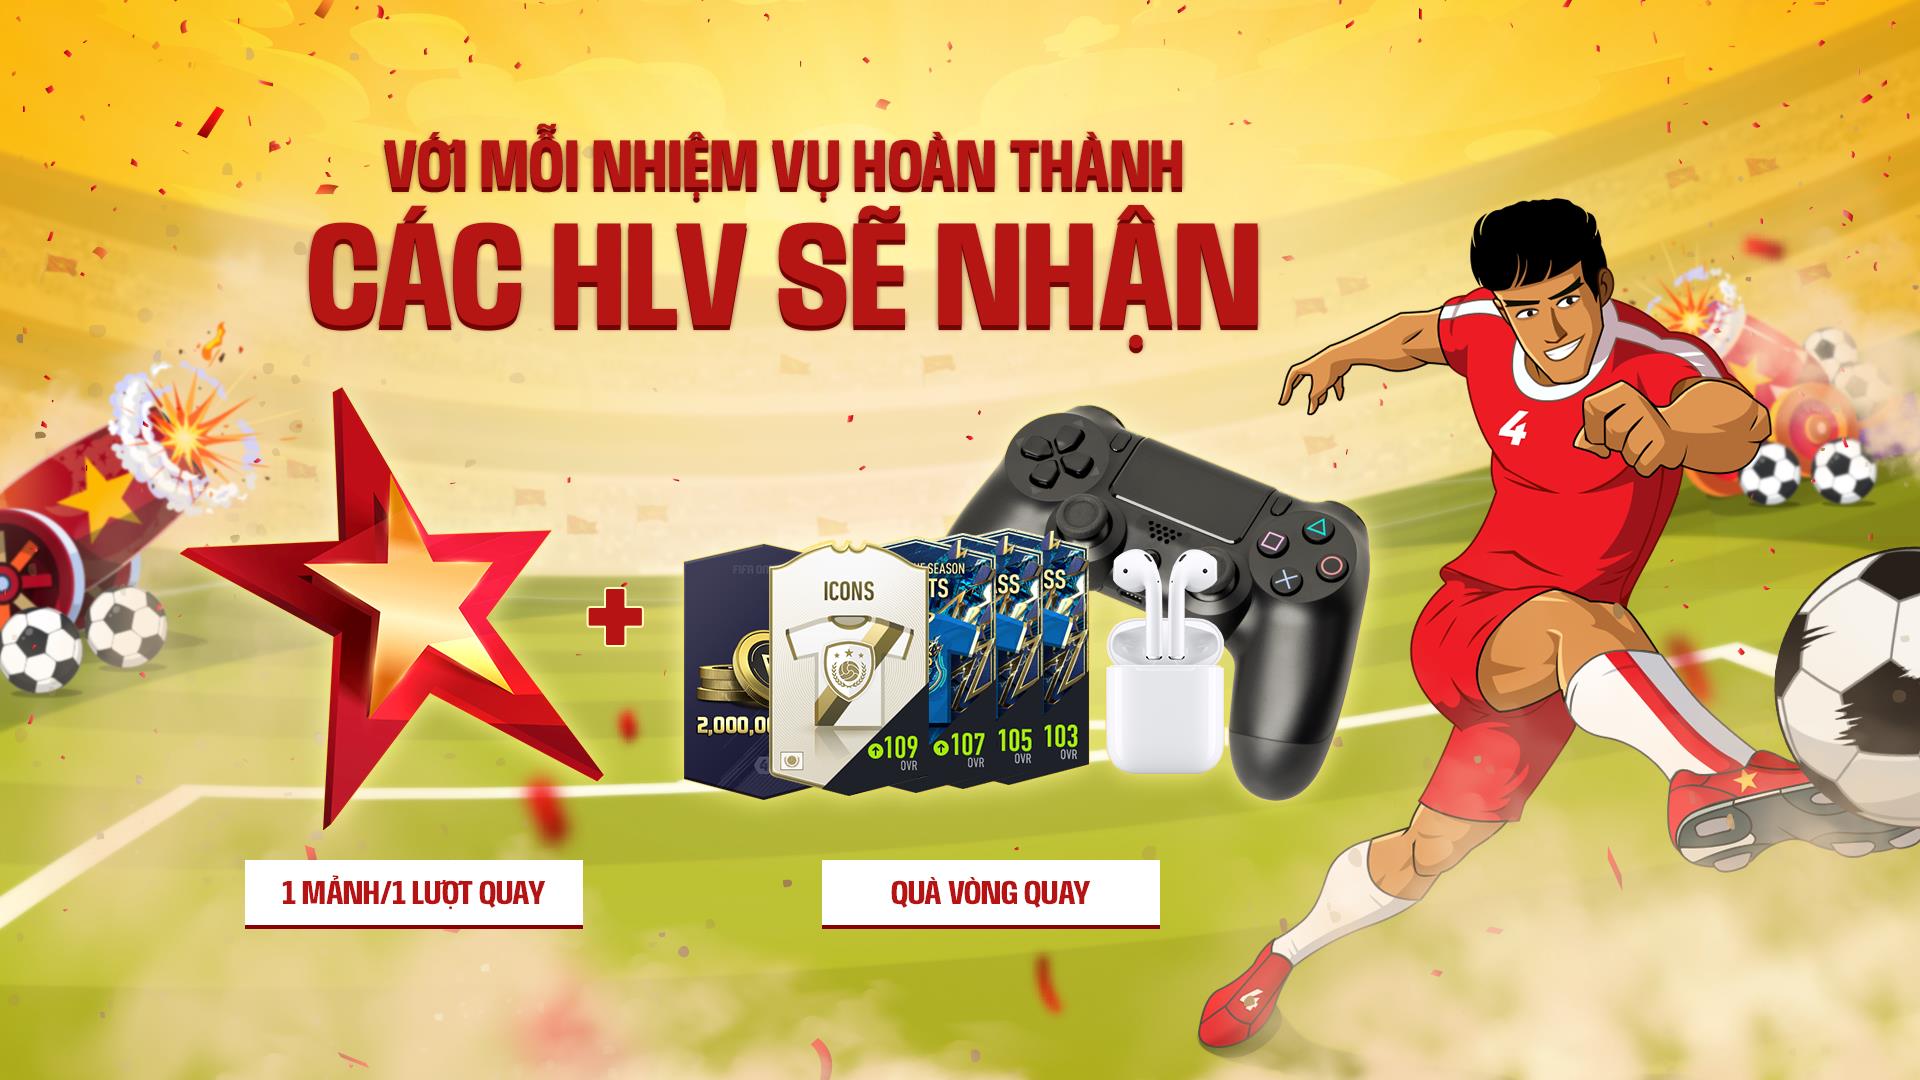 Người chơi FIFA Online có cơ hội nhận Airpods và bộ điều khiển PS4 miễn phí nhân dịp Quốc khánh - Ảnh 3.